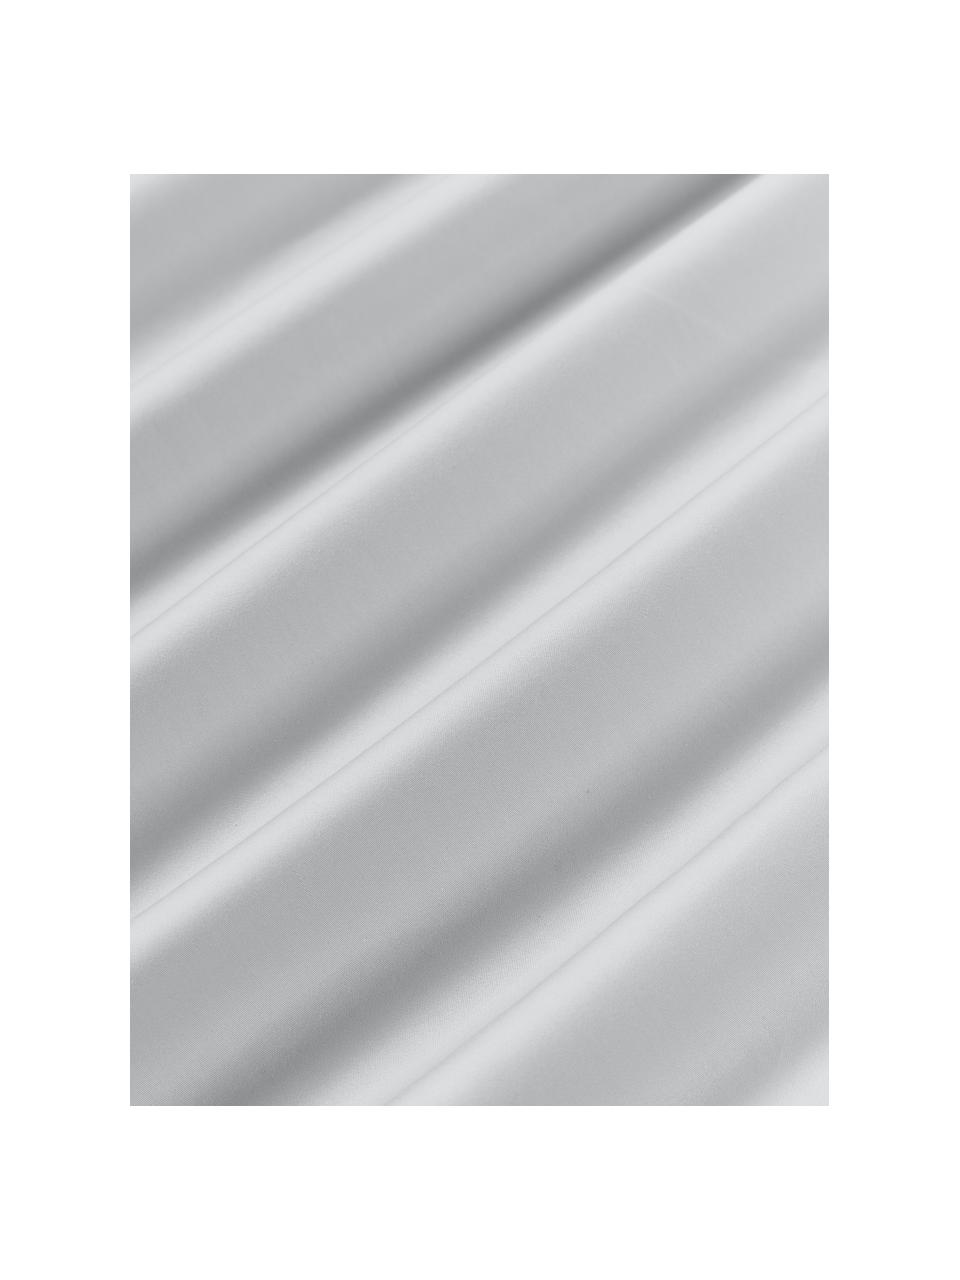 Poszewka na poduszkę z satyny bawełnianej Carlotta, Jasny szary, biały, S 40 x D 80 cm